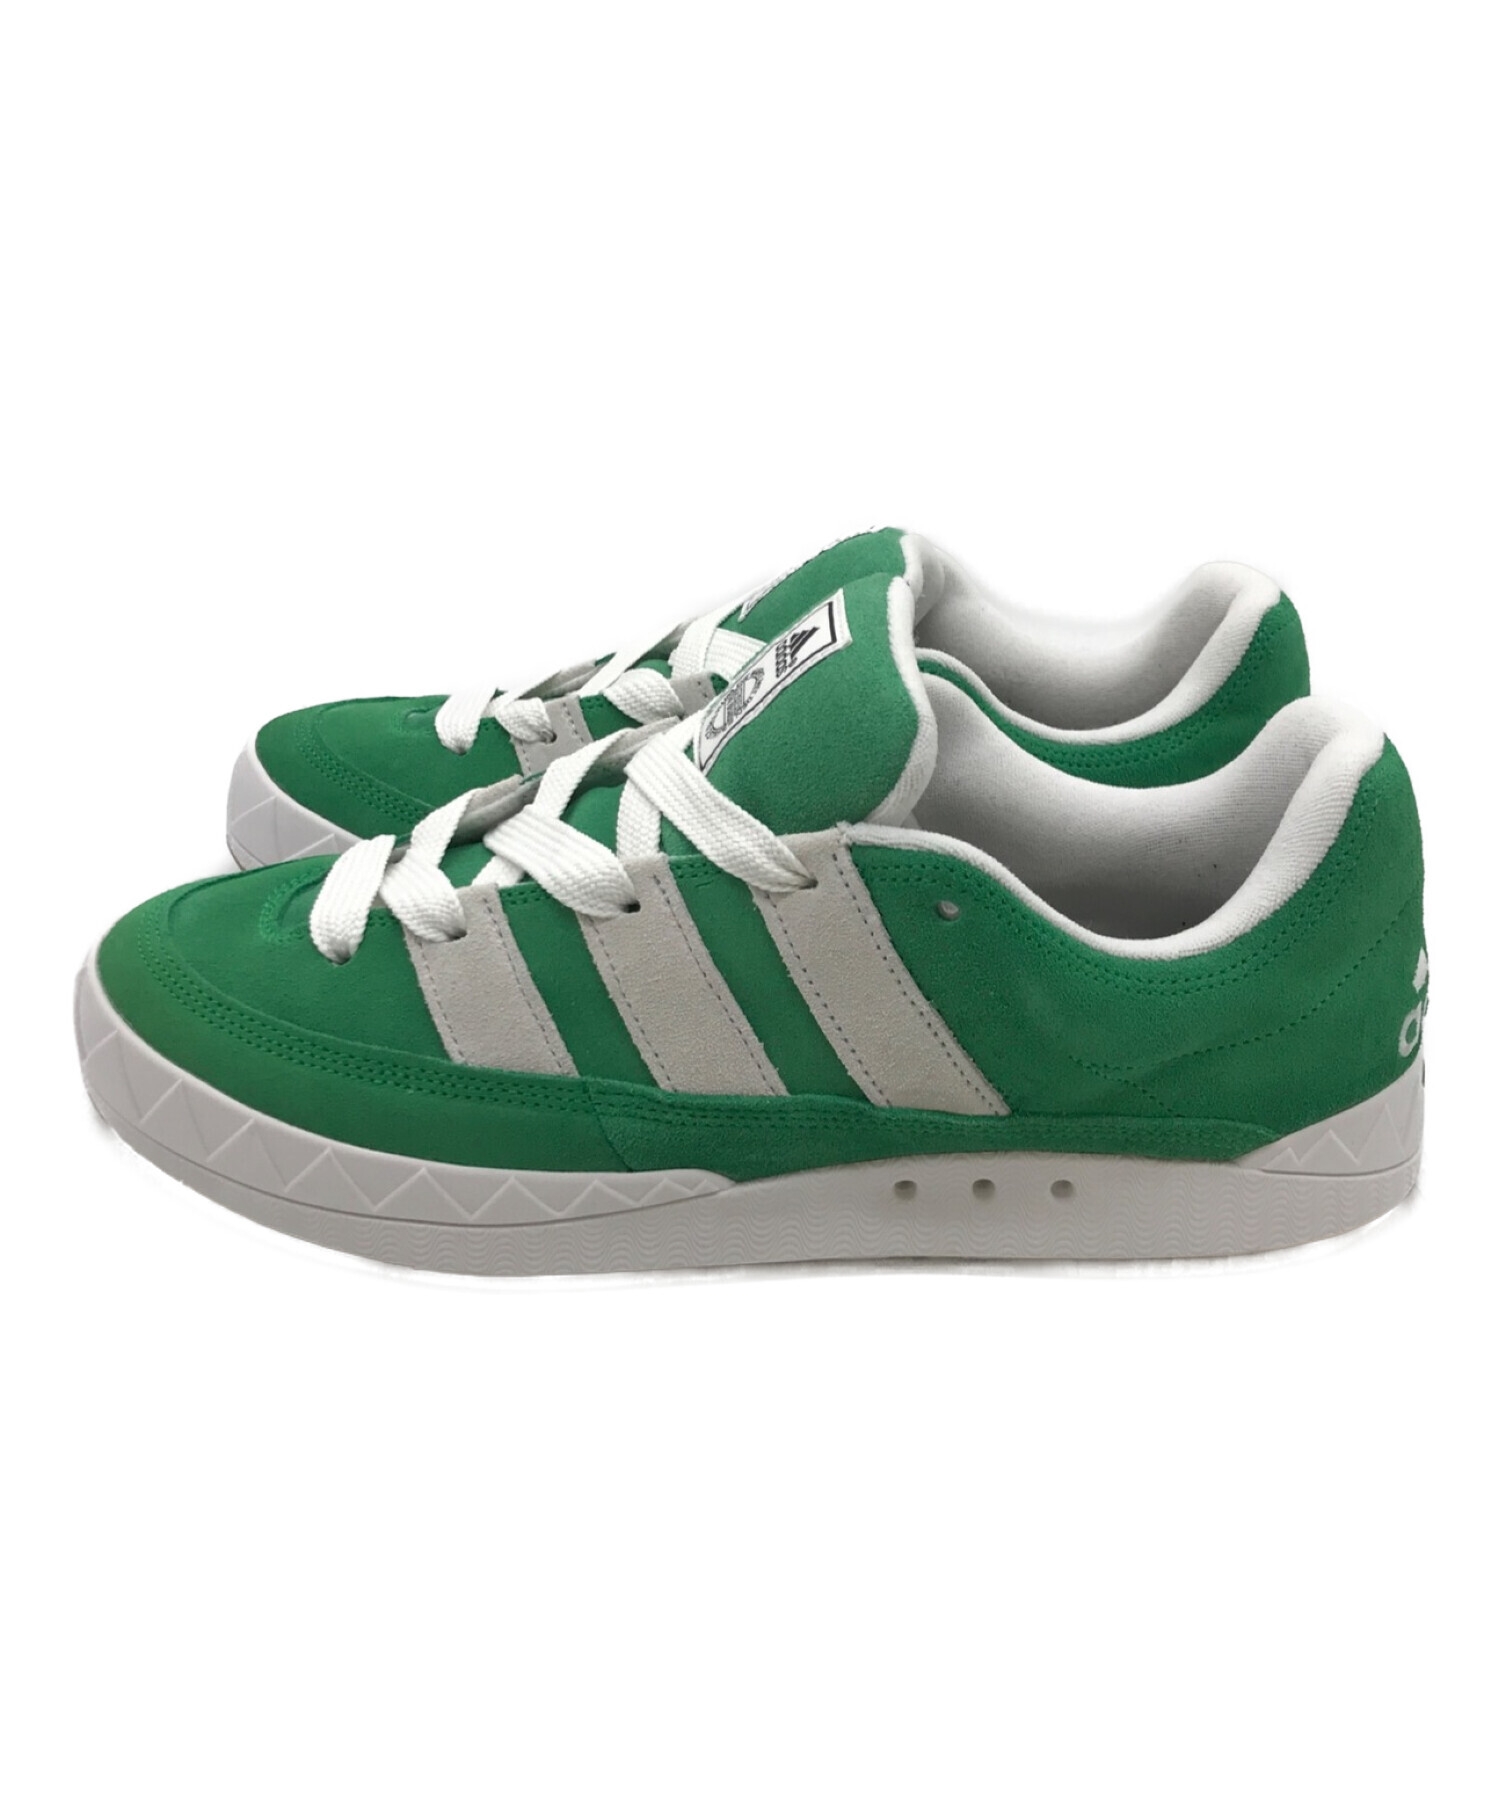 Adidas adimatic green 27.5cm 新品